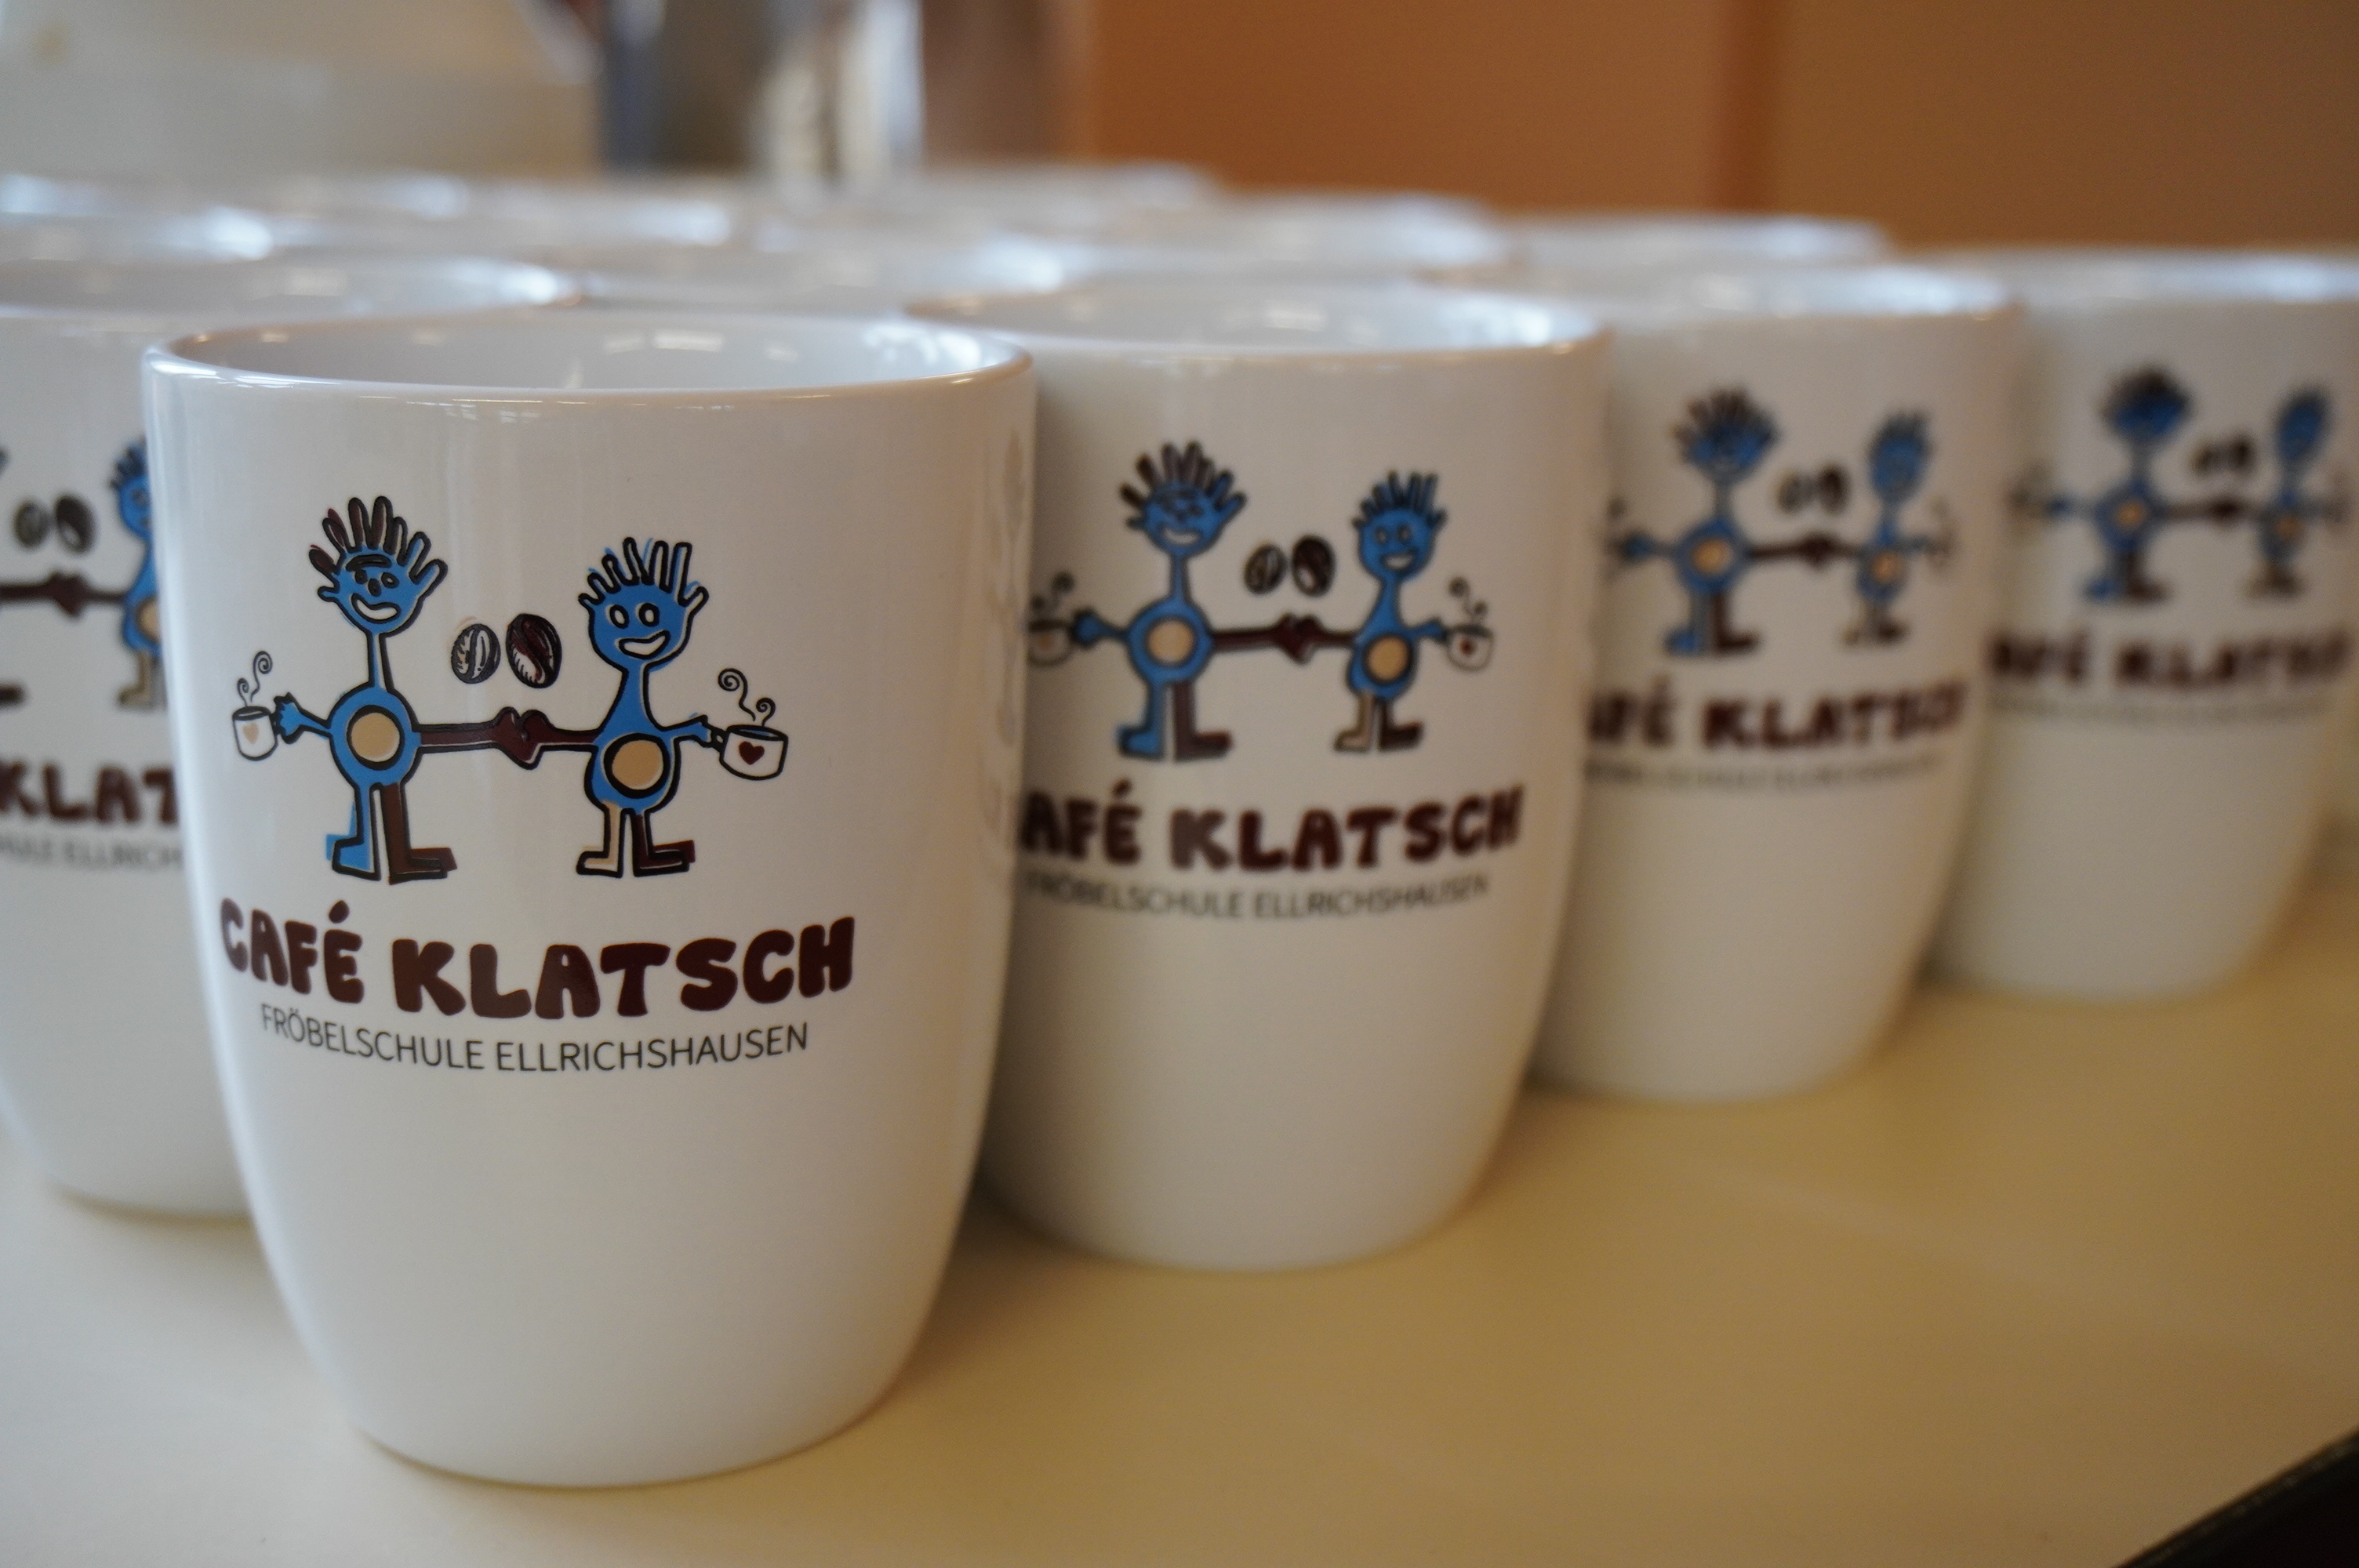  Das Café Klatsch hat neue Tassen - das Bild wird mit Klick vergrößert. 